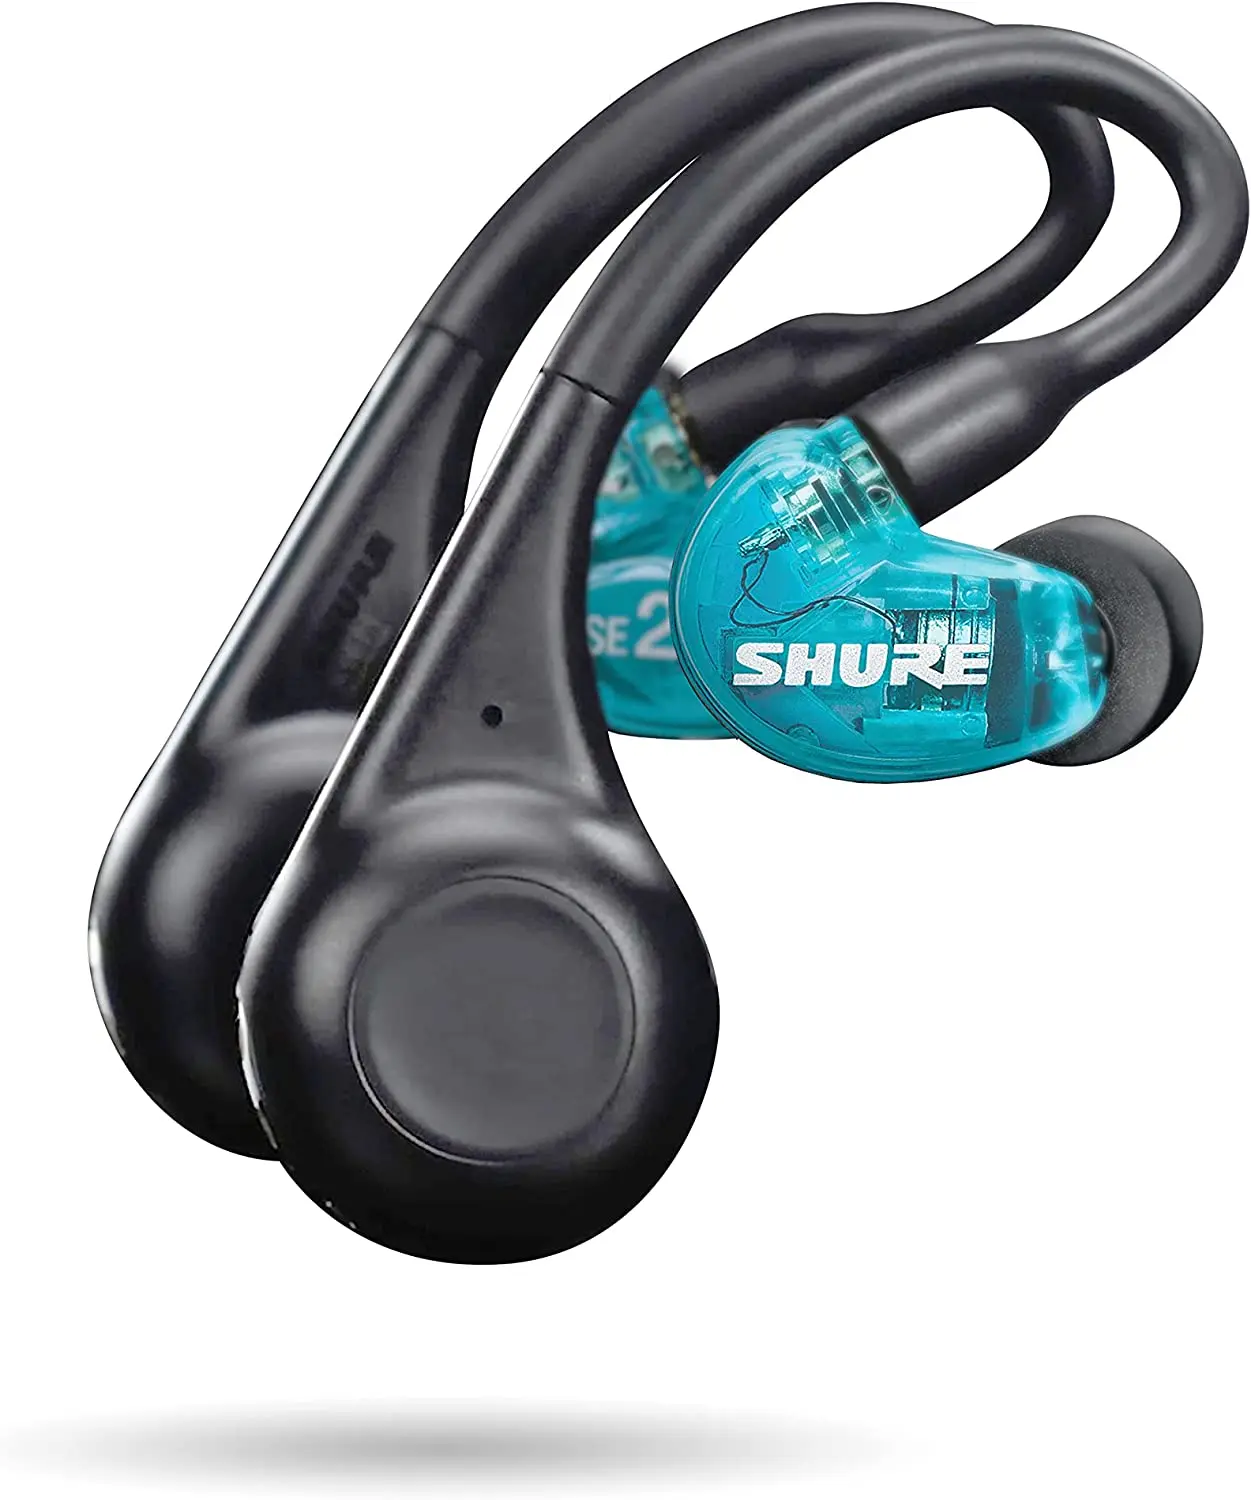 

Shure AONIC 215 TW2 настоящие беспроводные Звукоизолирующие наушники с технологией Bluetooth 5, премиум аудио с глубокими басами, безопасная посадка